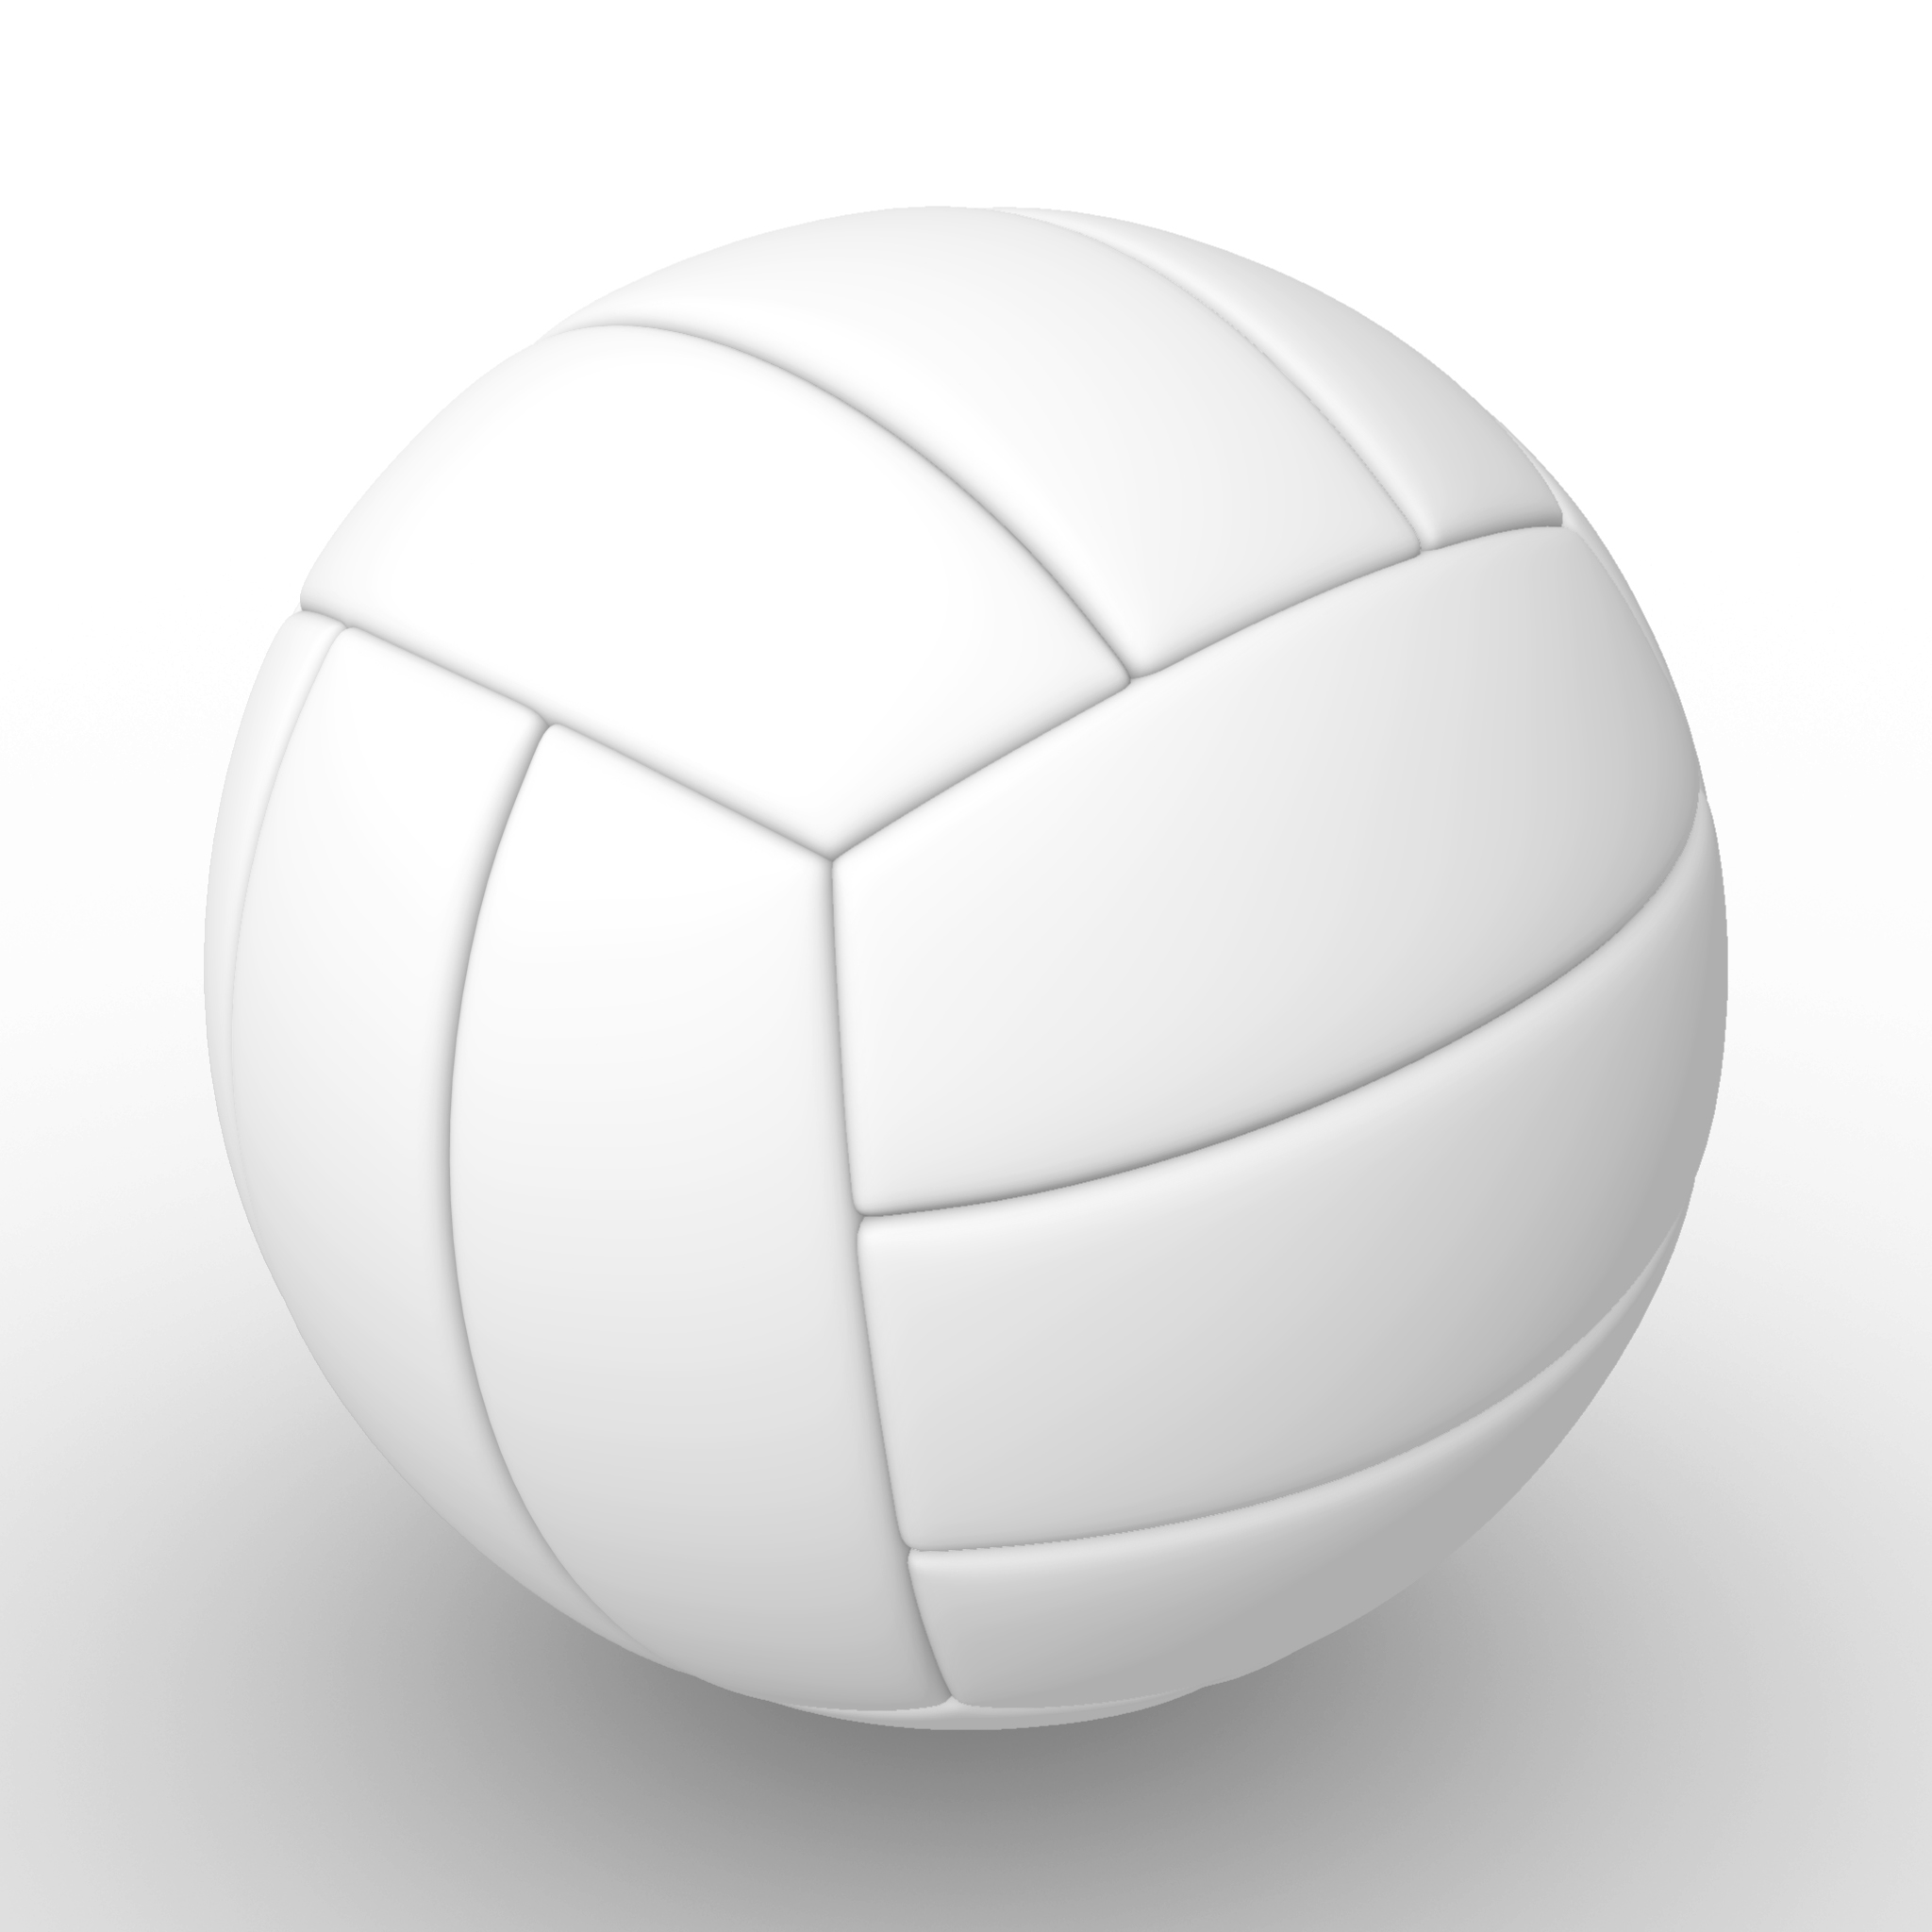 3d model volleyball sport equipment